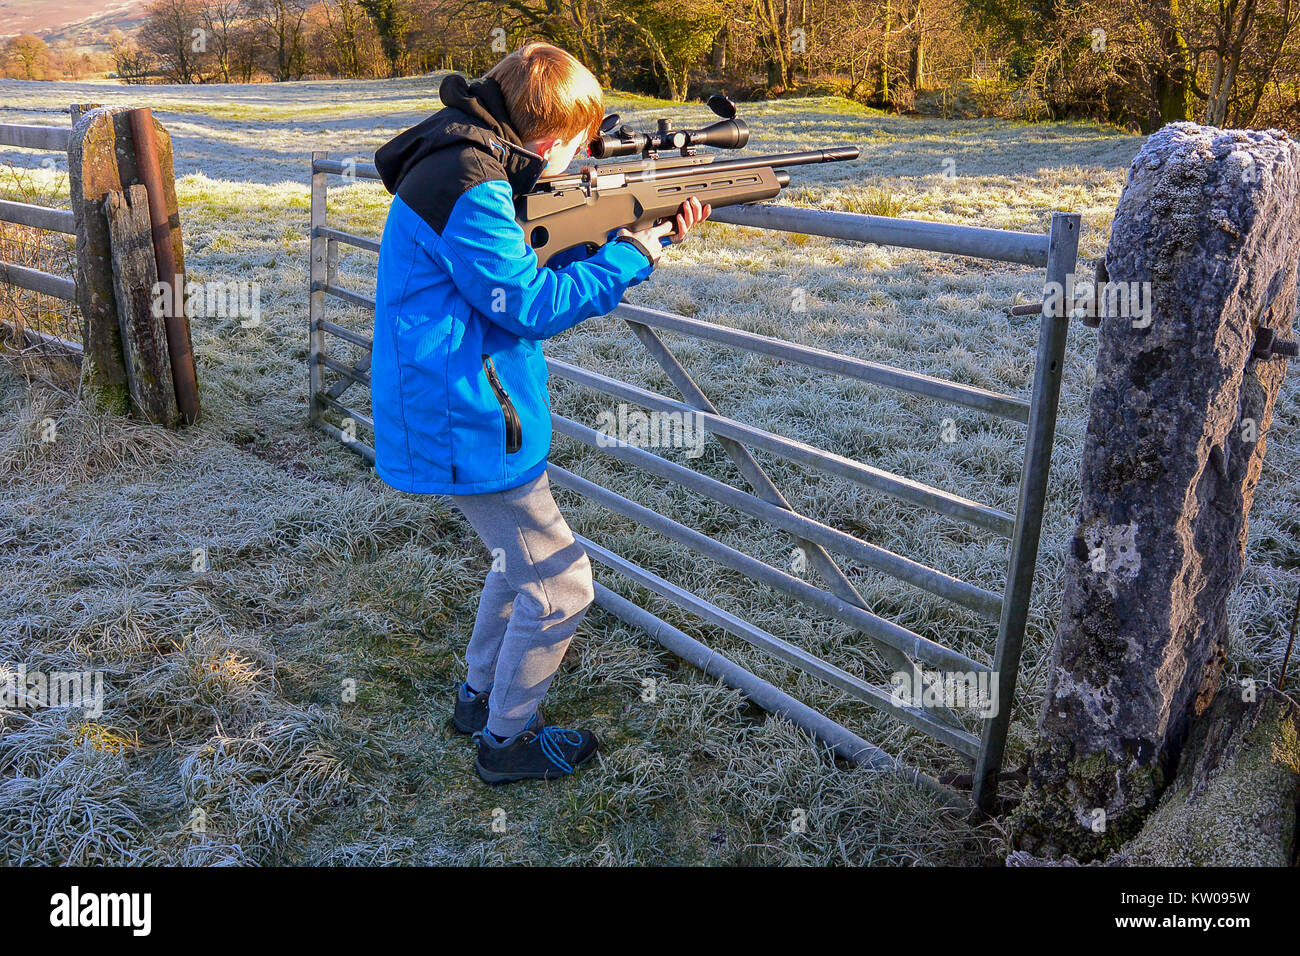 Teenager feuern ein Luftgewehr auf Ackerland an einem kalten, frostigen Tag Stockfoto